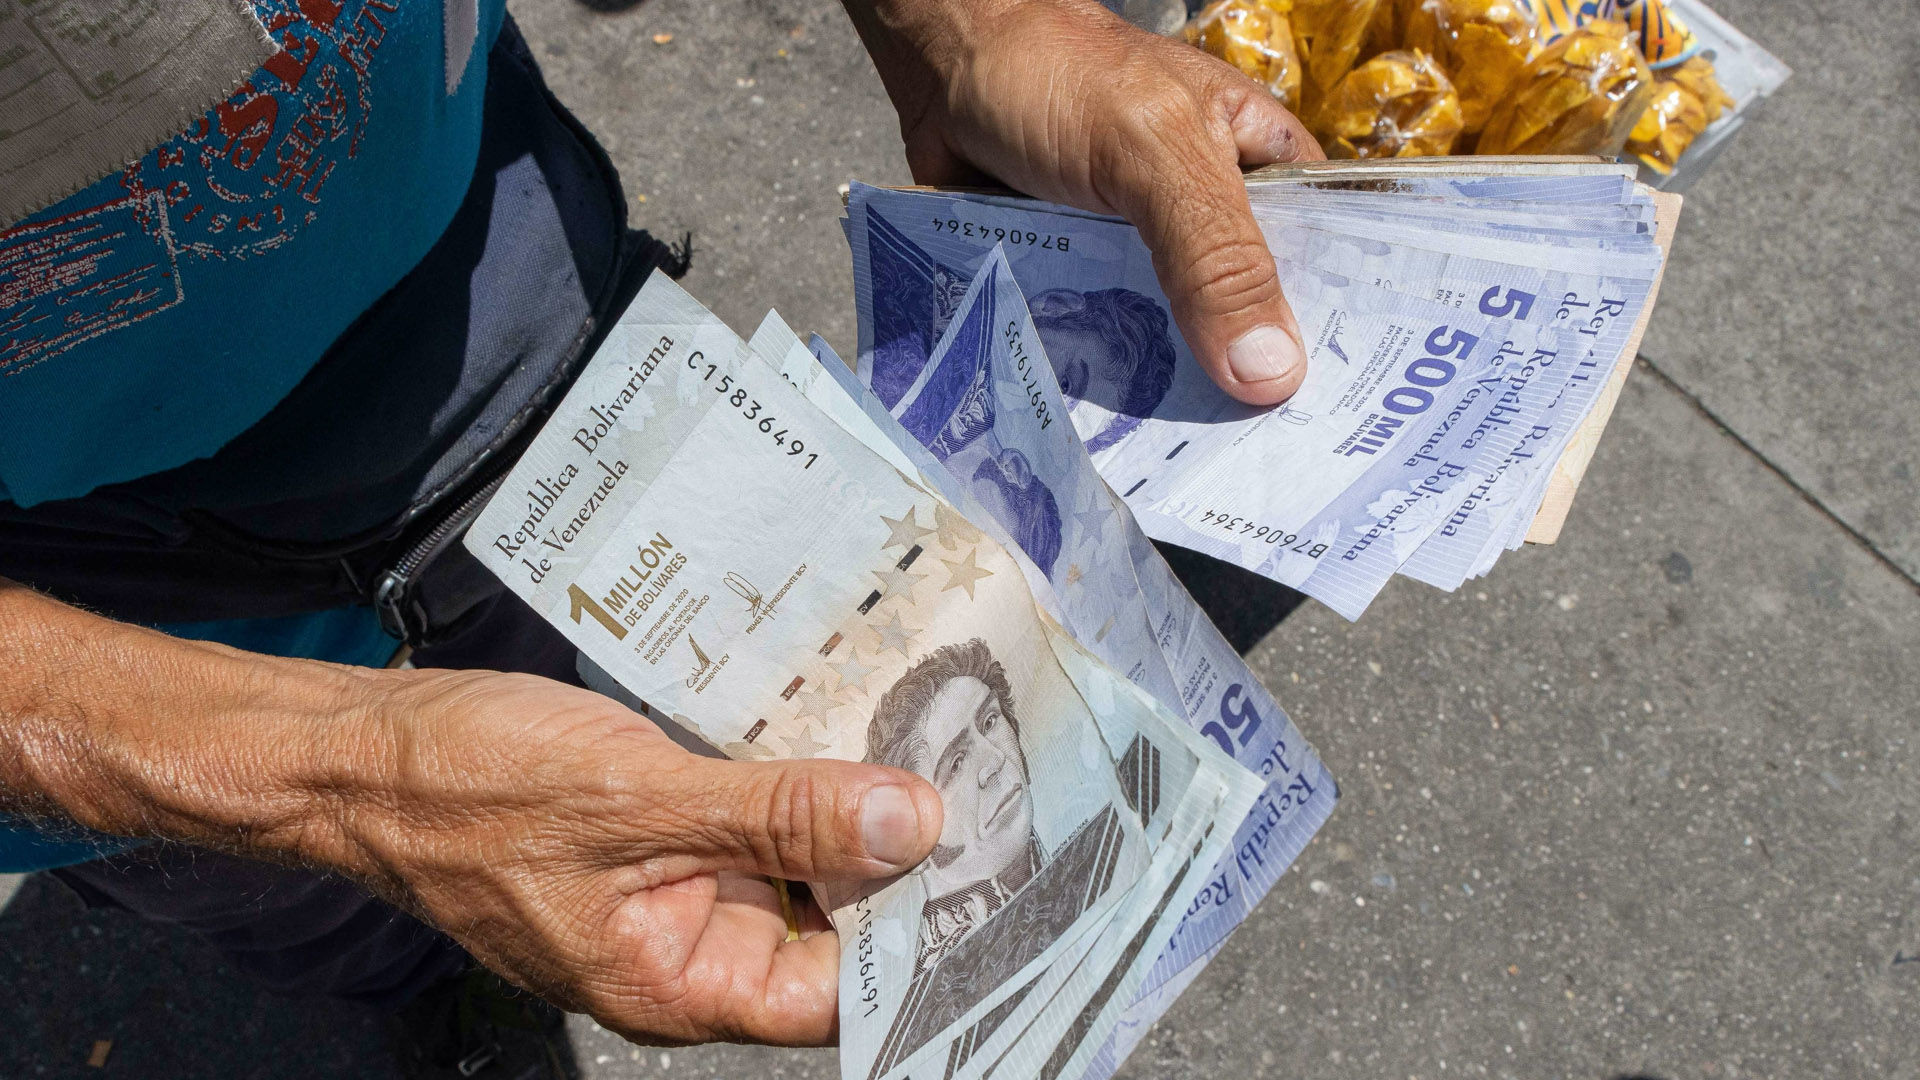 Inflación Venezuela